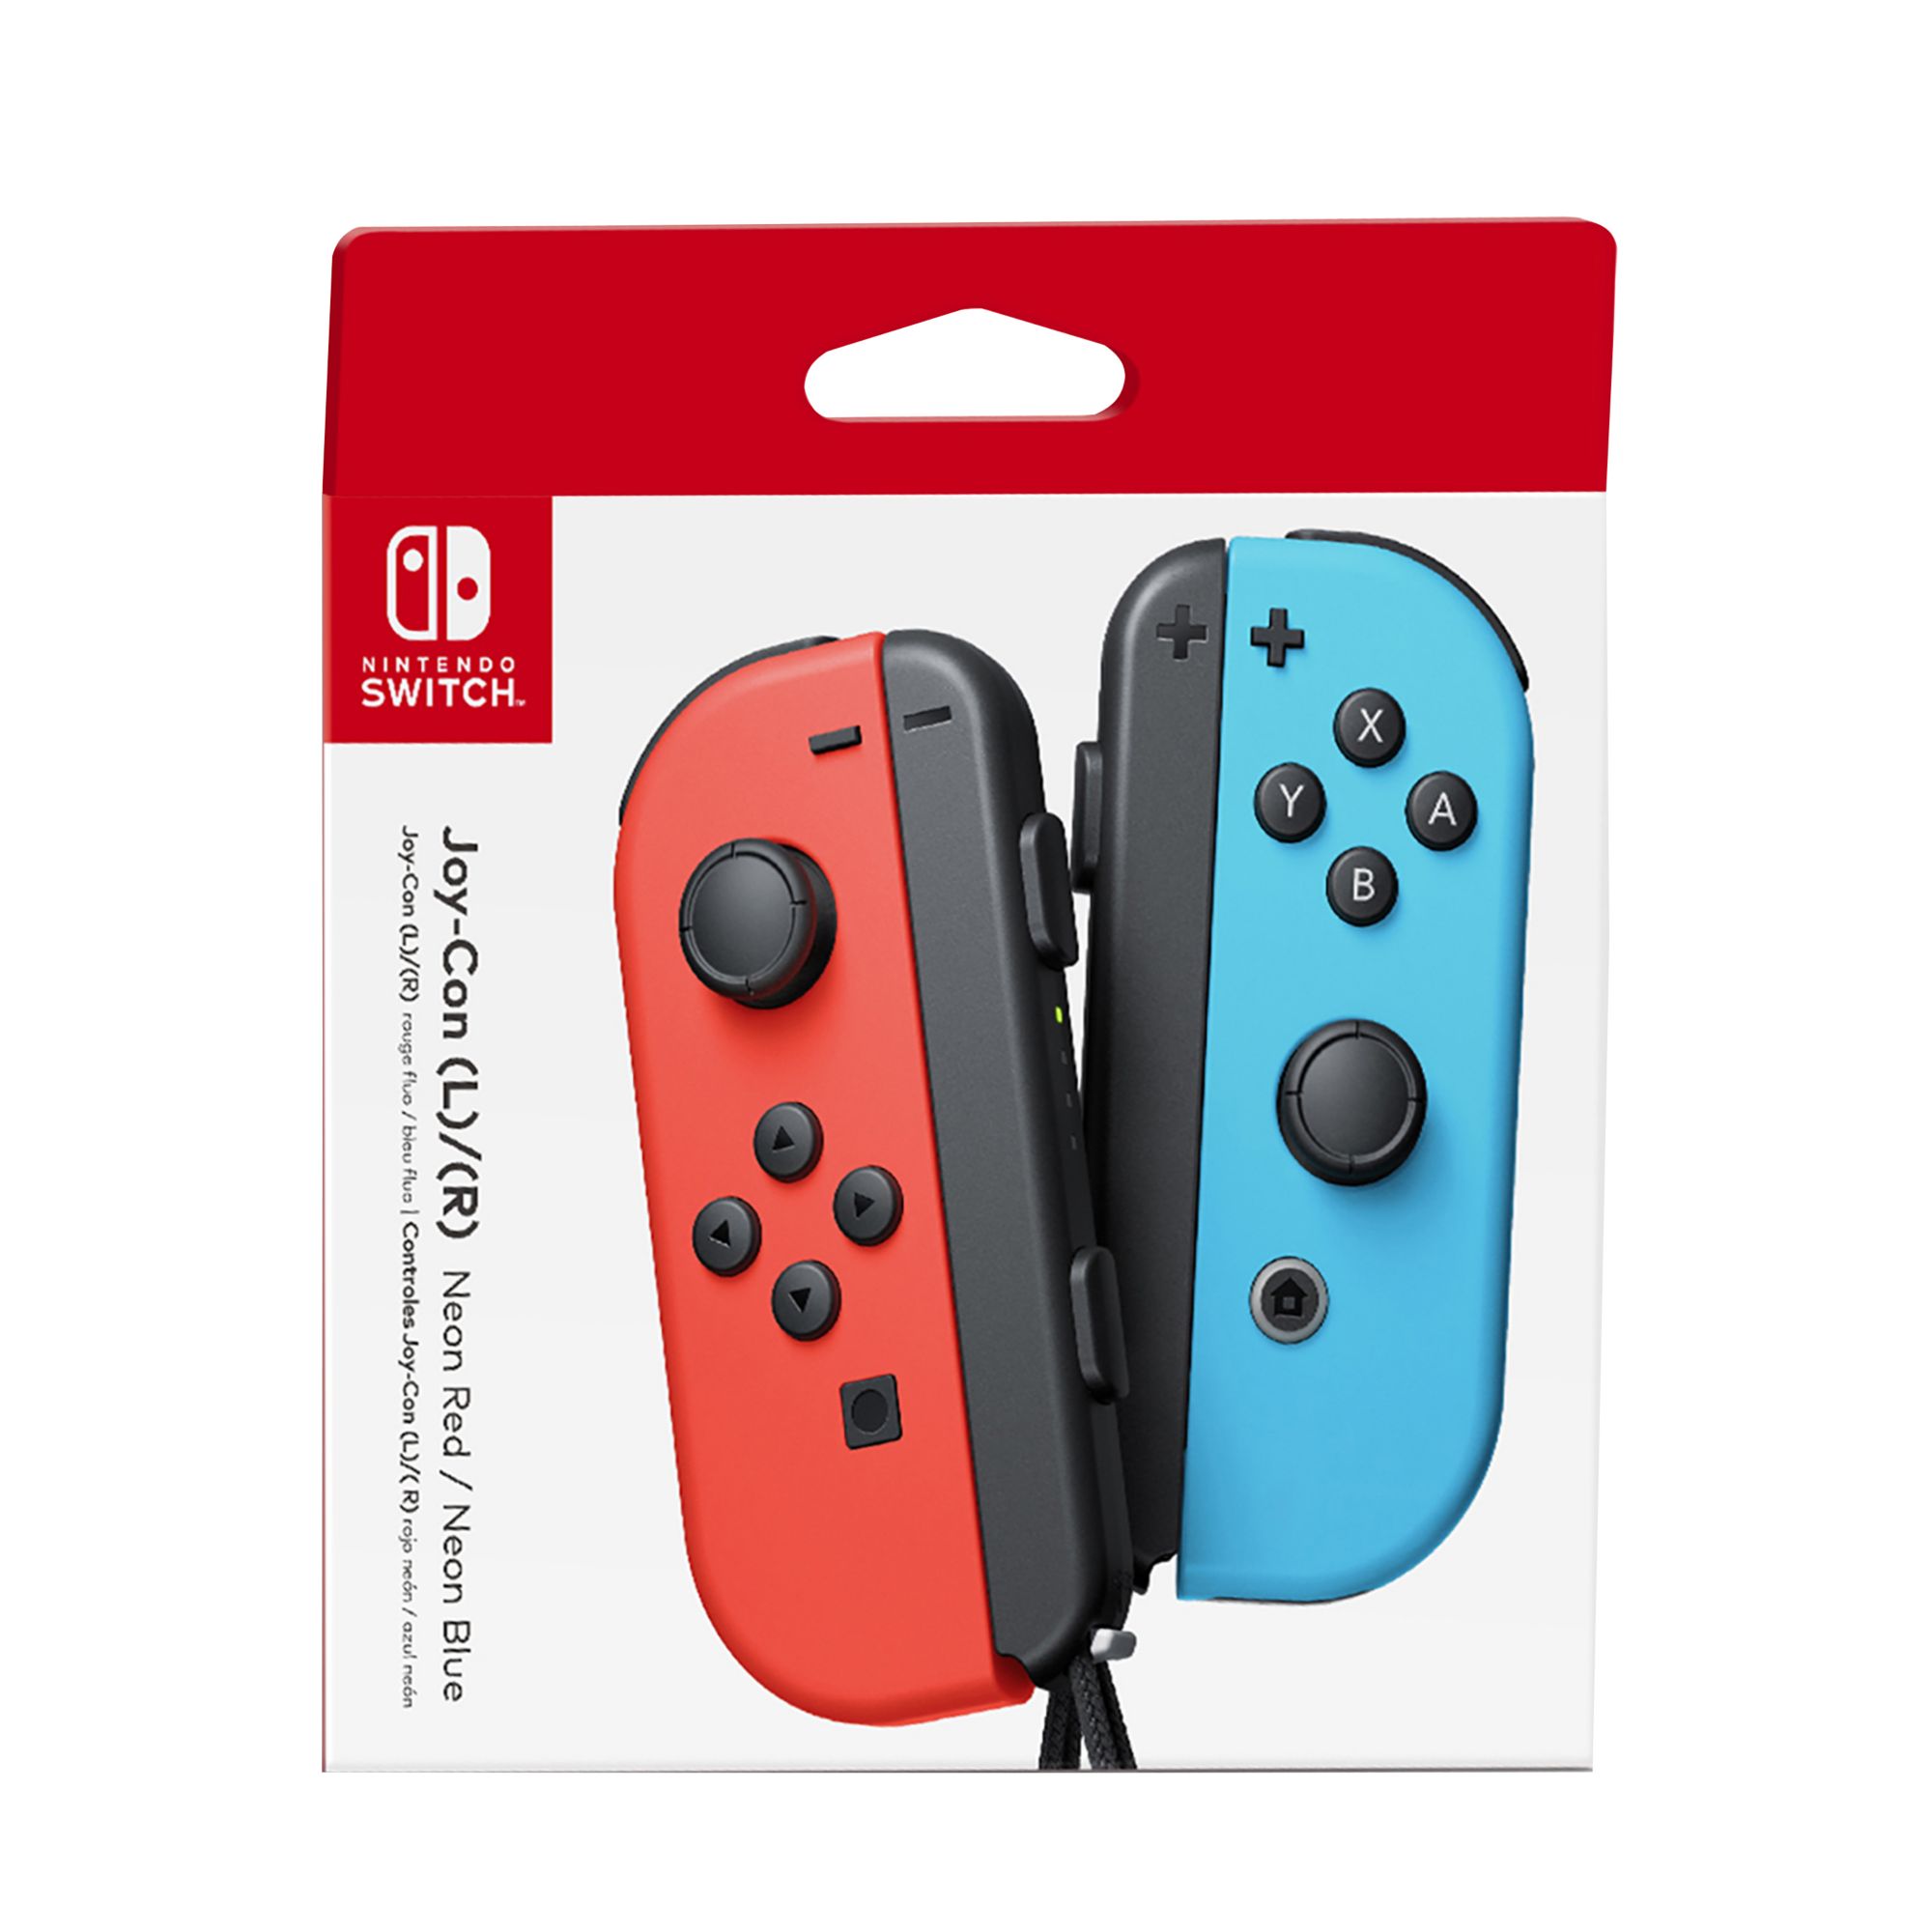 Nintendo Switch L/R Joy-Cons - Neon Red/Neon Blue | BJ's Wholesale